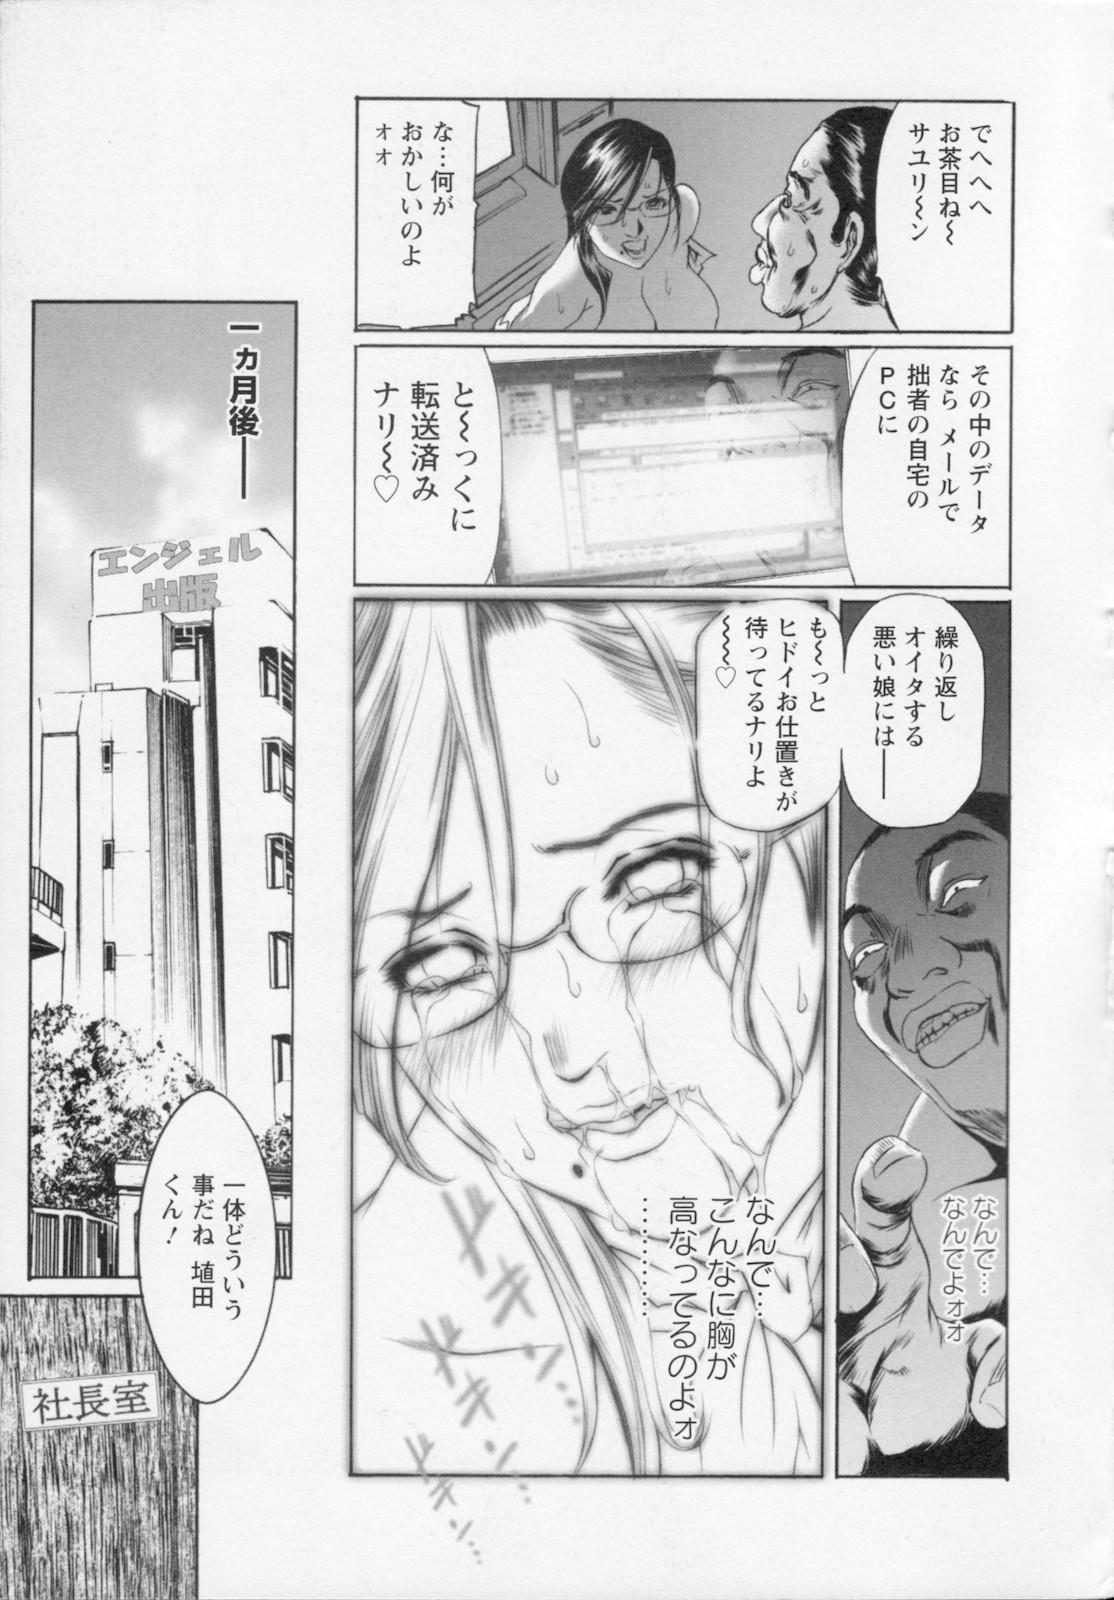 Watashi wa ryoujyoku daisuki na henatai mangaka desu 24